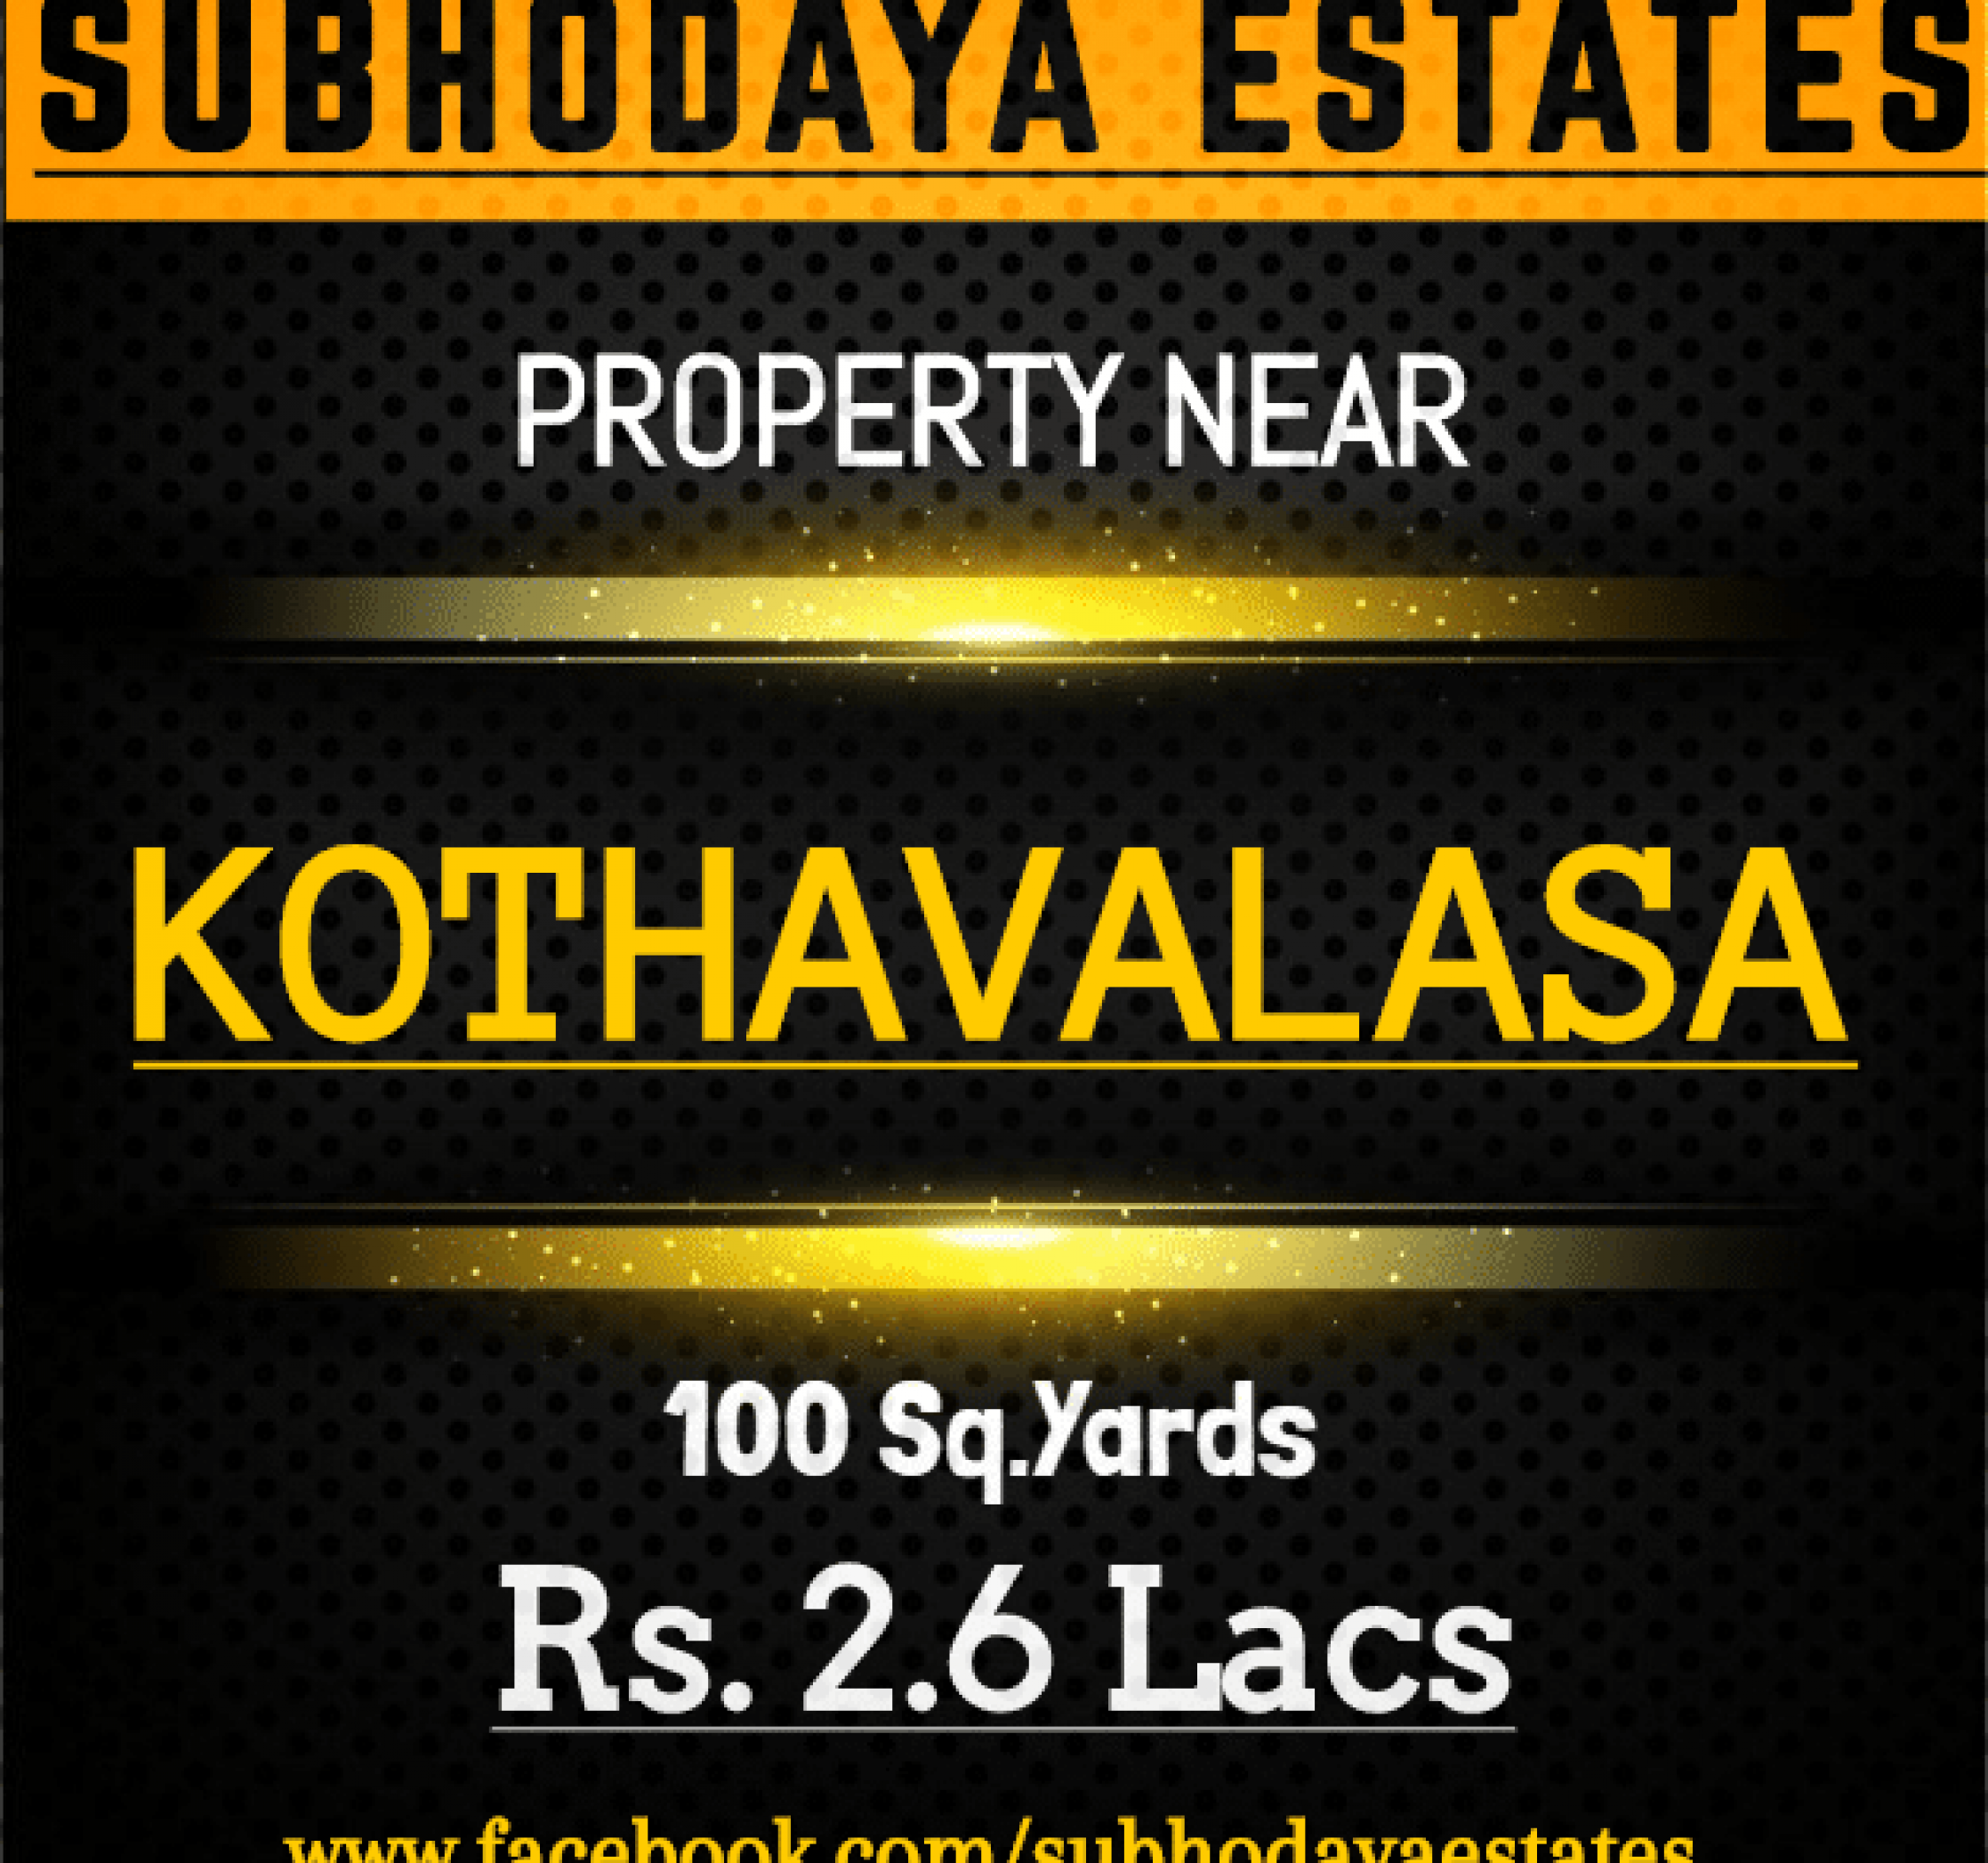 kothavalasa 2.6 lakhs without ph number